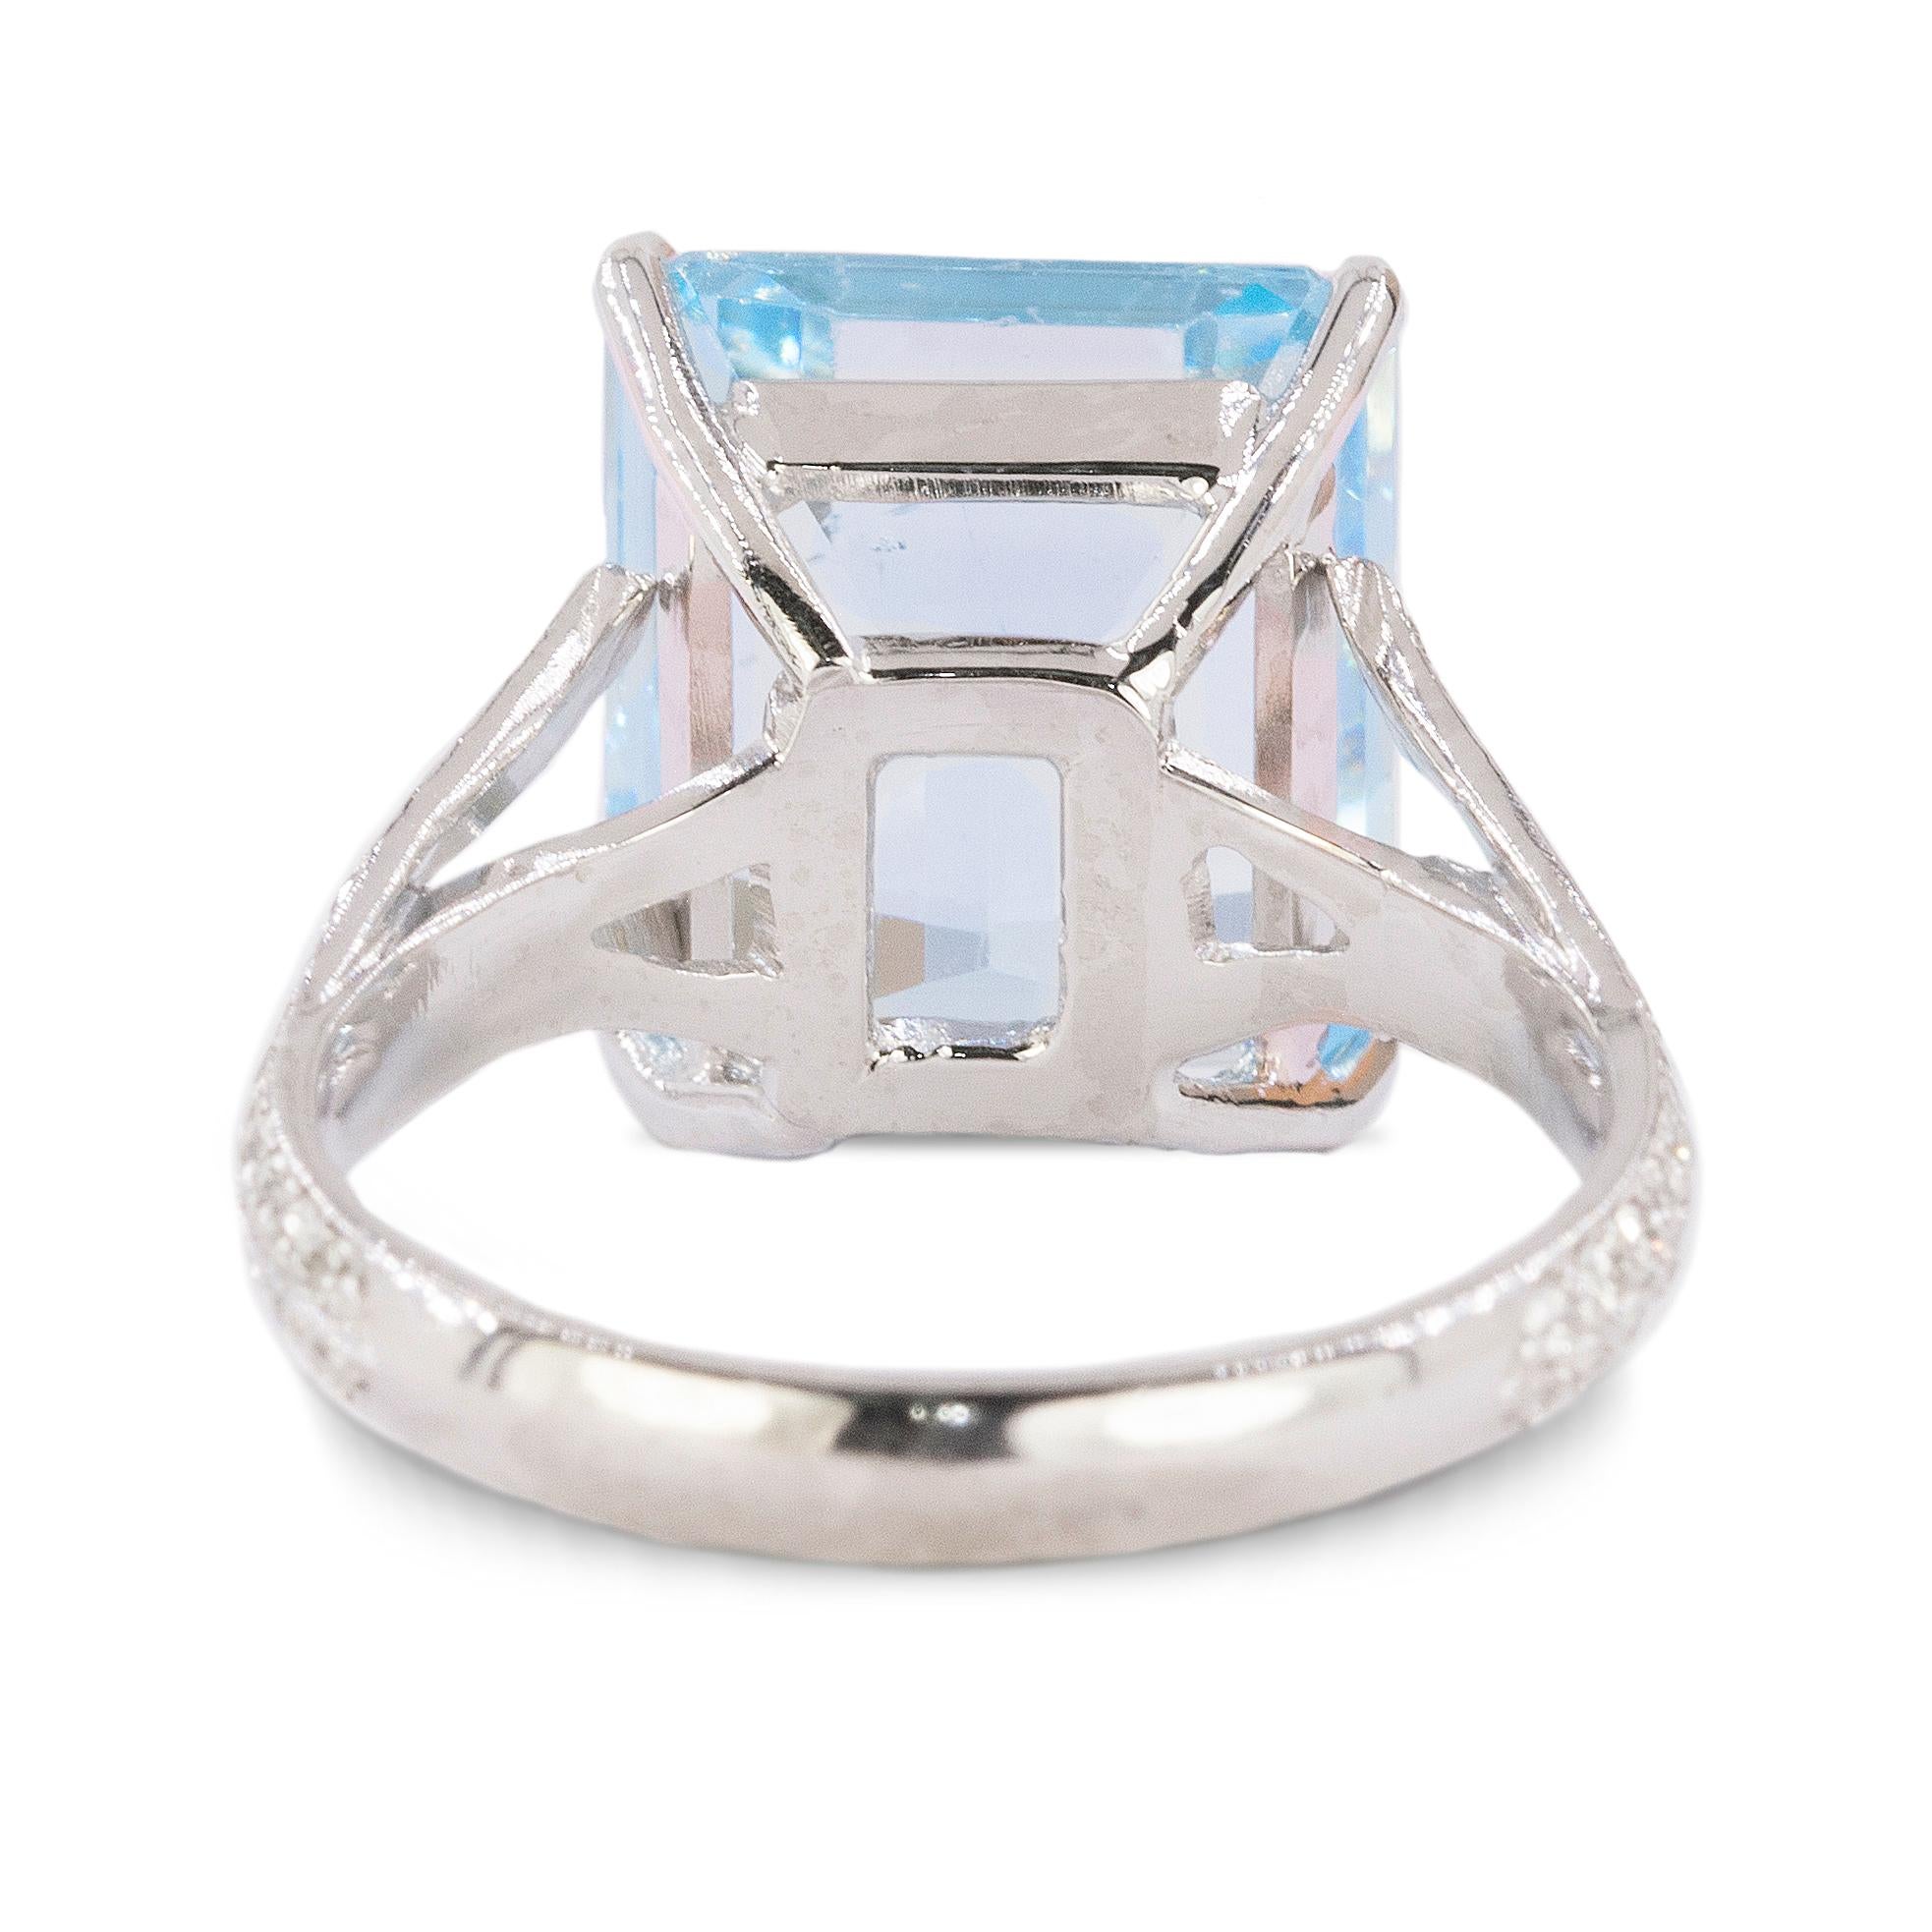 Women's or Men's Platinum Ring with 8.73 Carat Emerald Cut Aquamarine